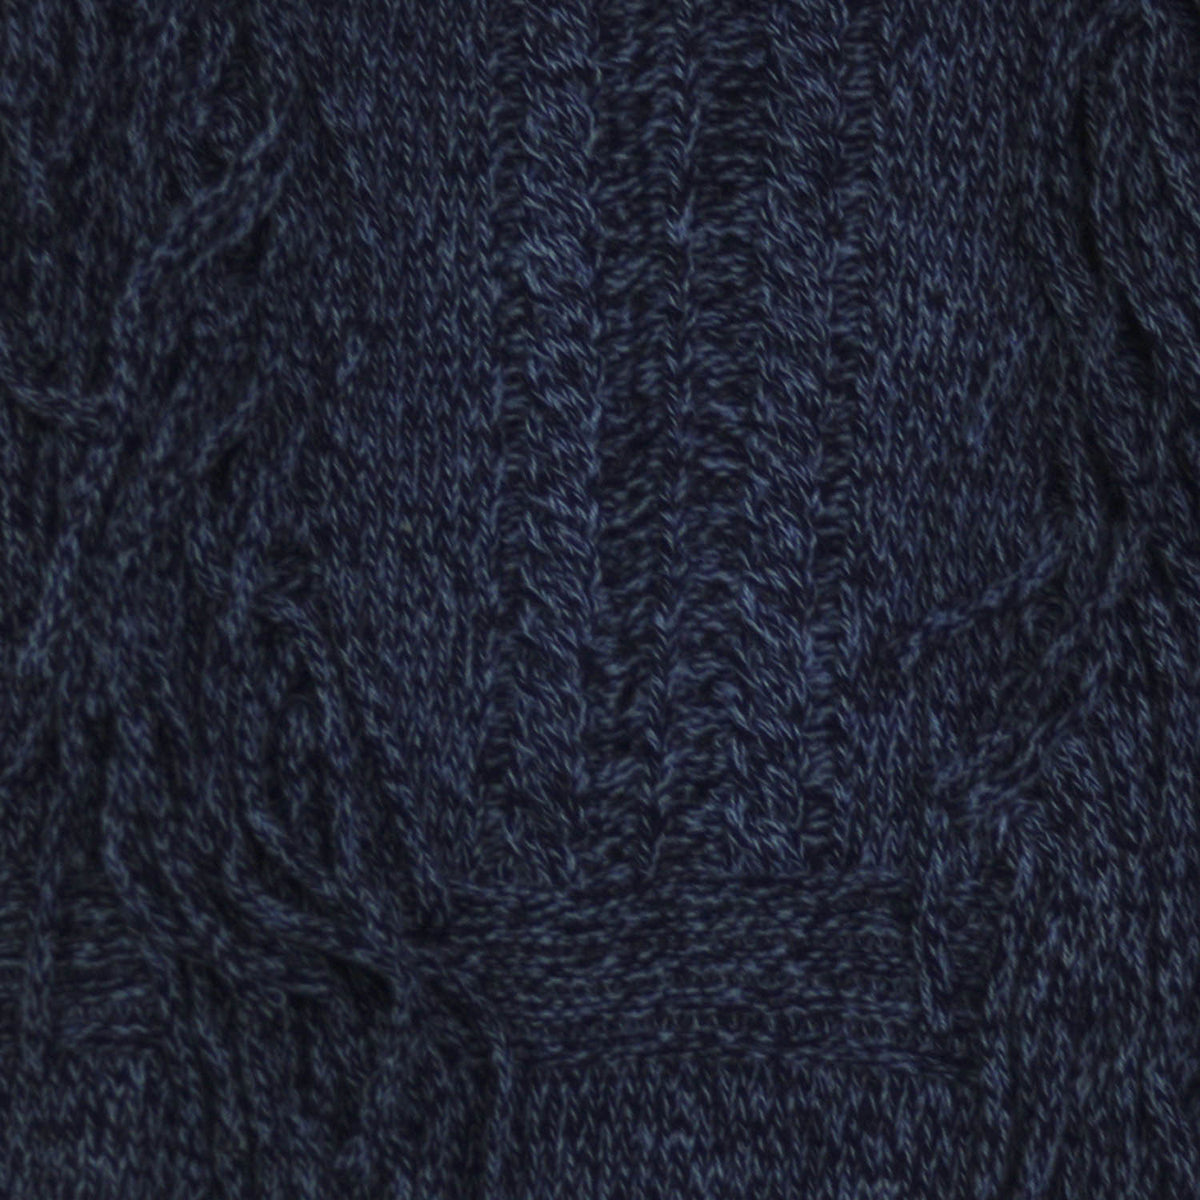 Sweater Rapsodia Fringes Moline Azul